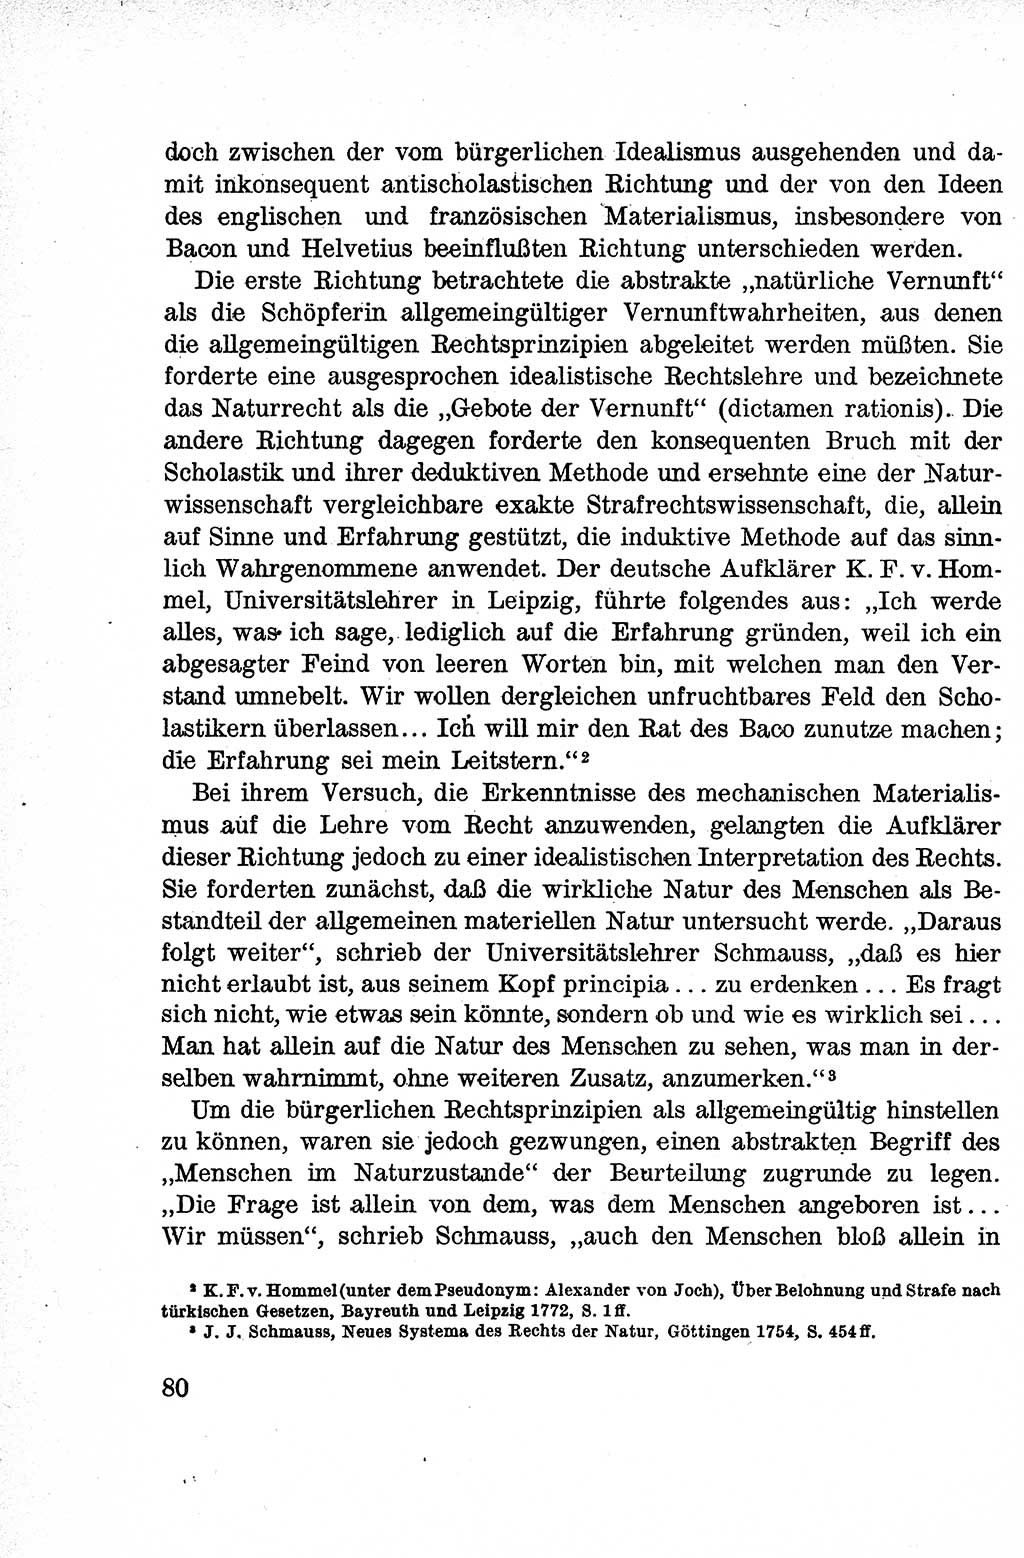 Lehrbuch des Strafrechts der Deutschen Demokratischen Republik (DDR), Allgemeiner Teil 1959, Seite 80 (Lb. Strafr. DDR AT 1959, S. 80)